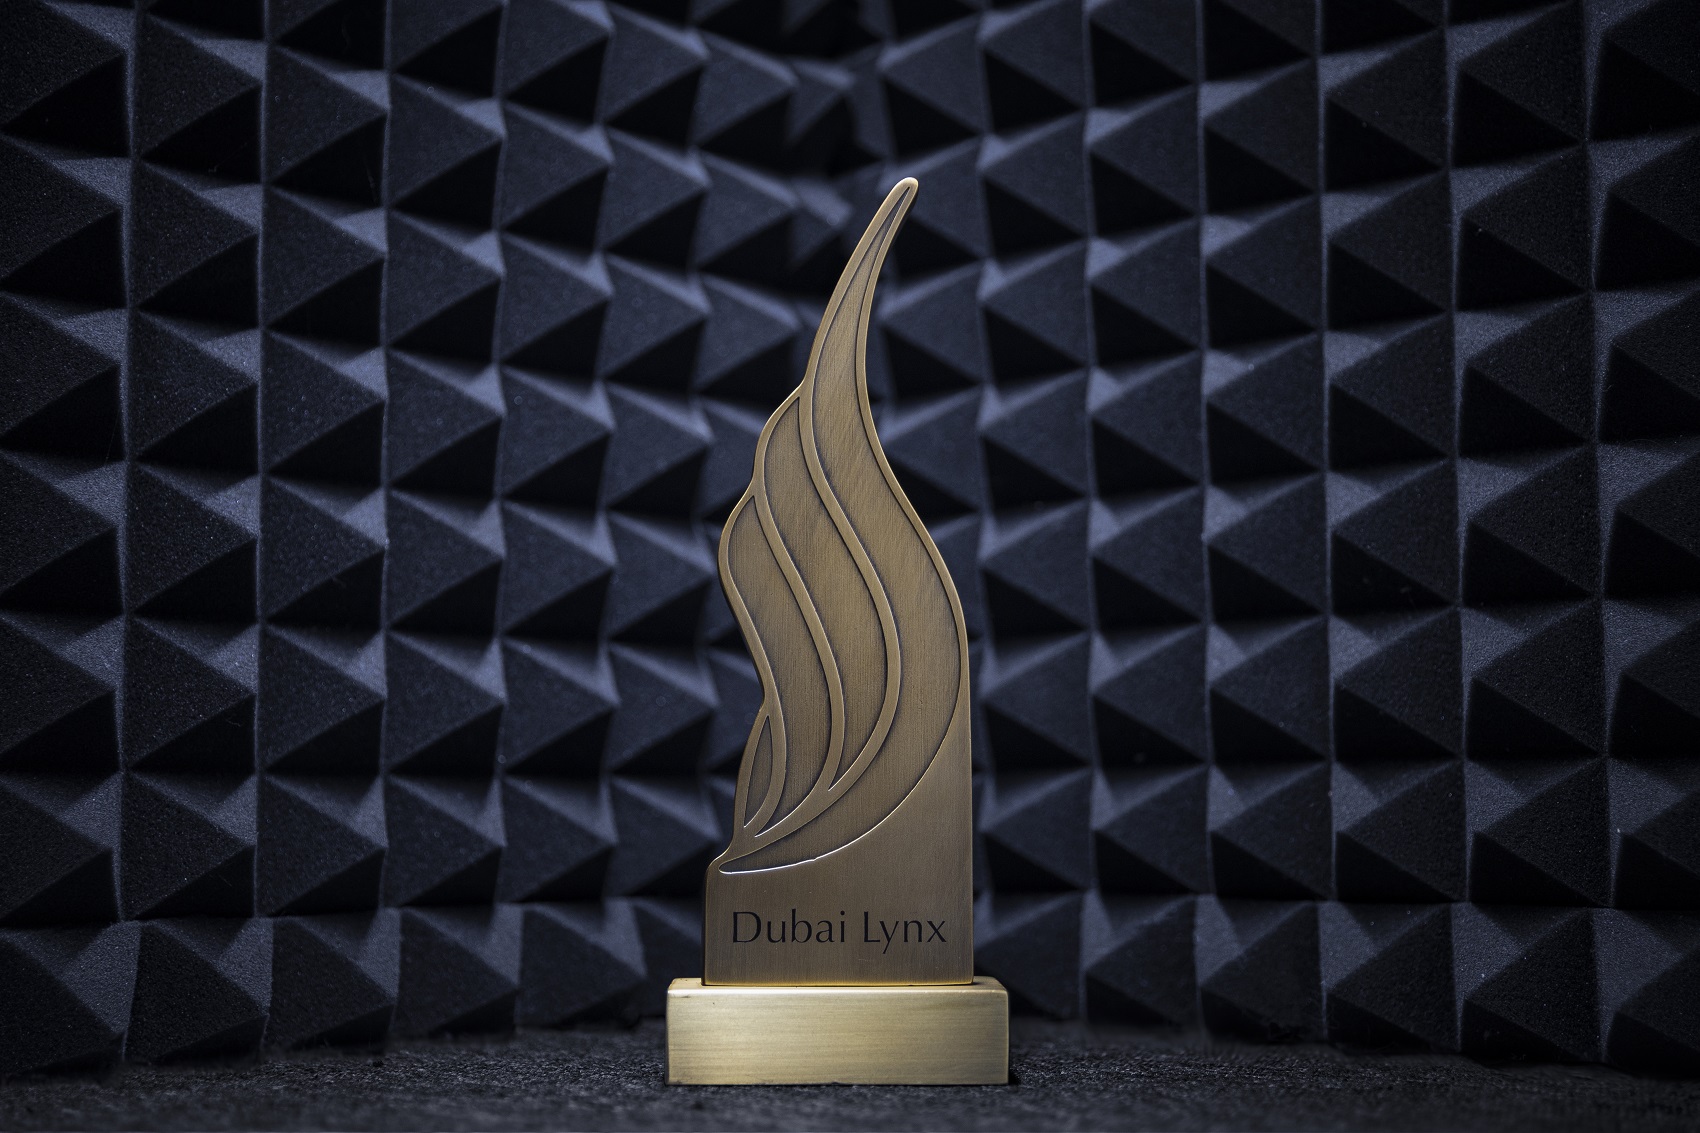 المملكة تفوز بأول جائزة كبرى في فئة الجوال في دبي لينكس